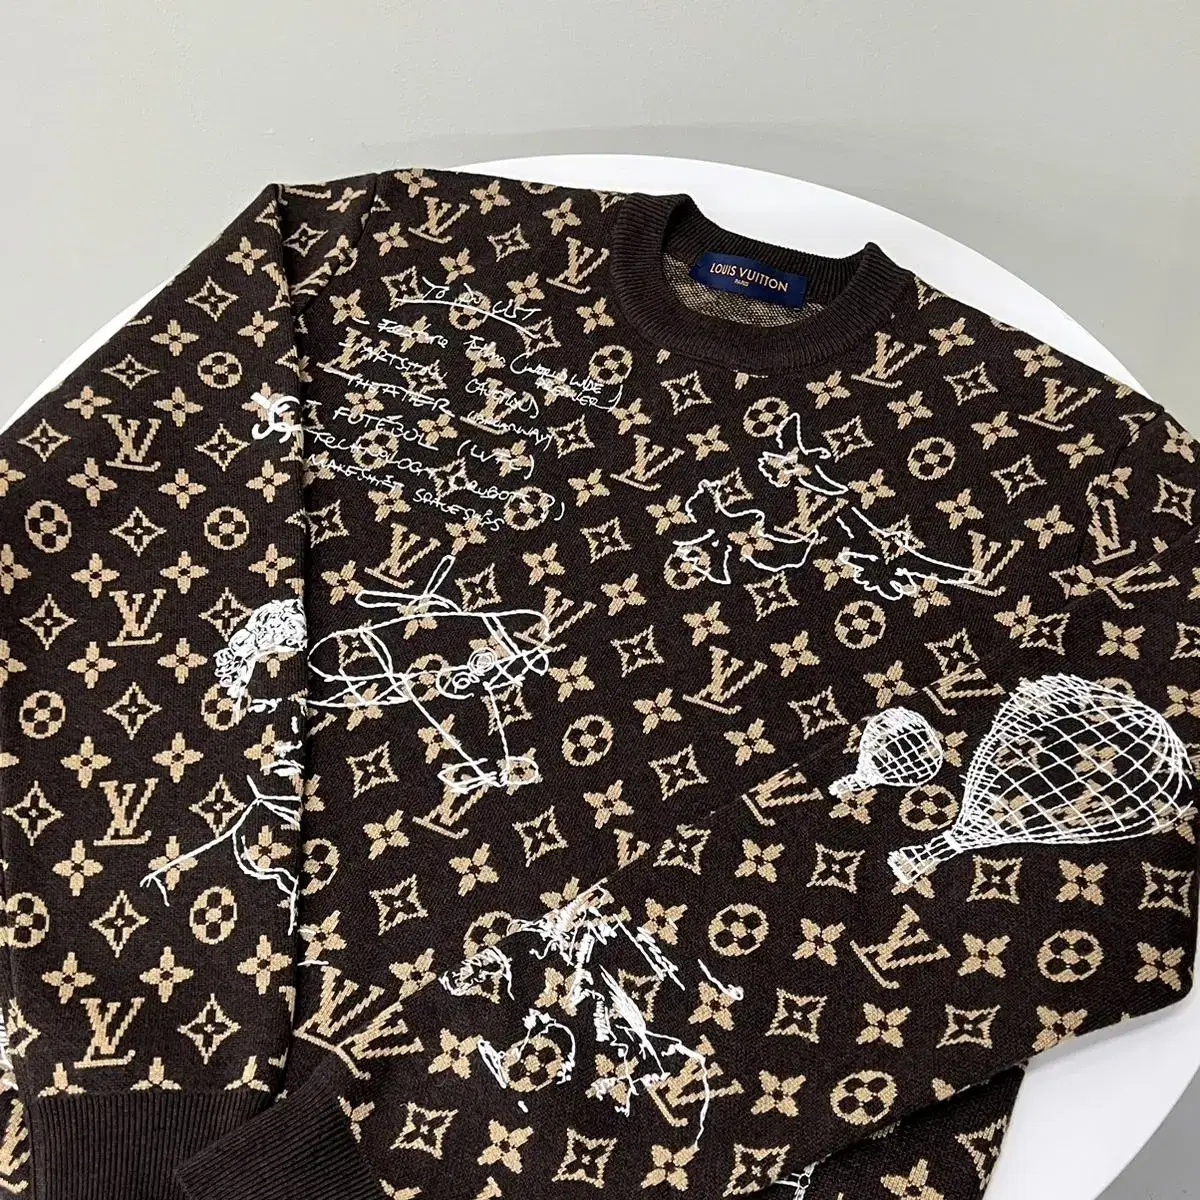 Louis Vuitton 1ABXYU Sweatshirt